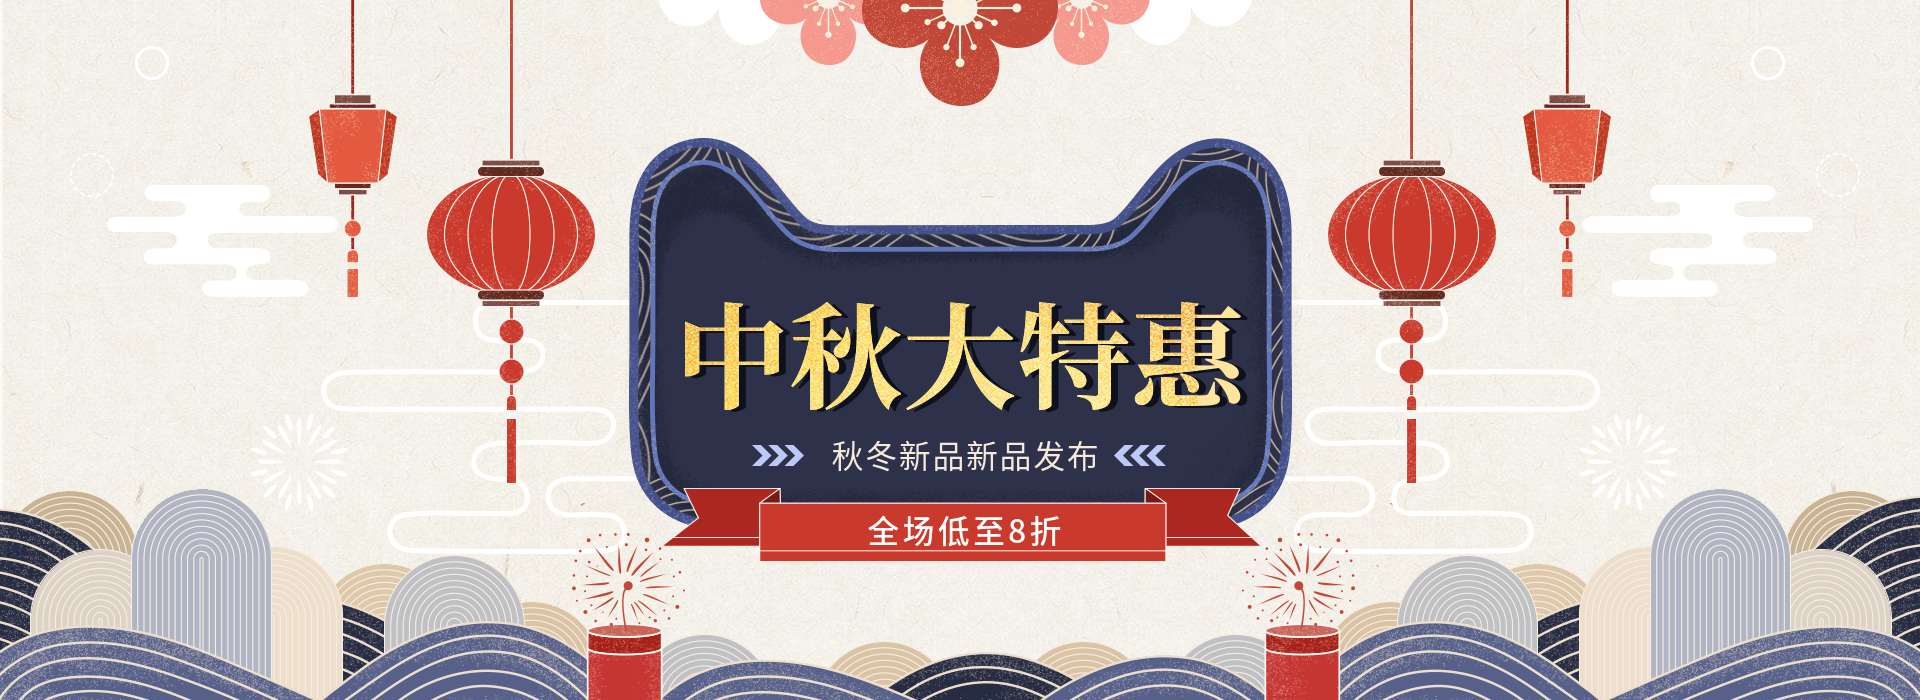 中秋节天猫促销中国风电商海报banner